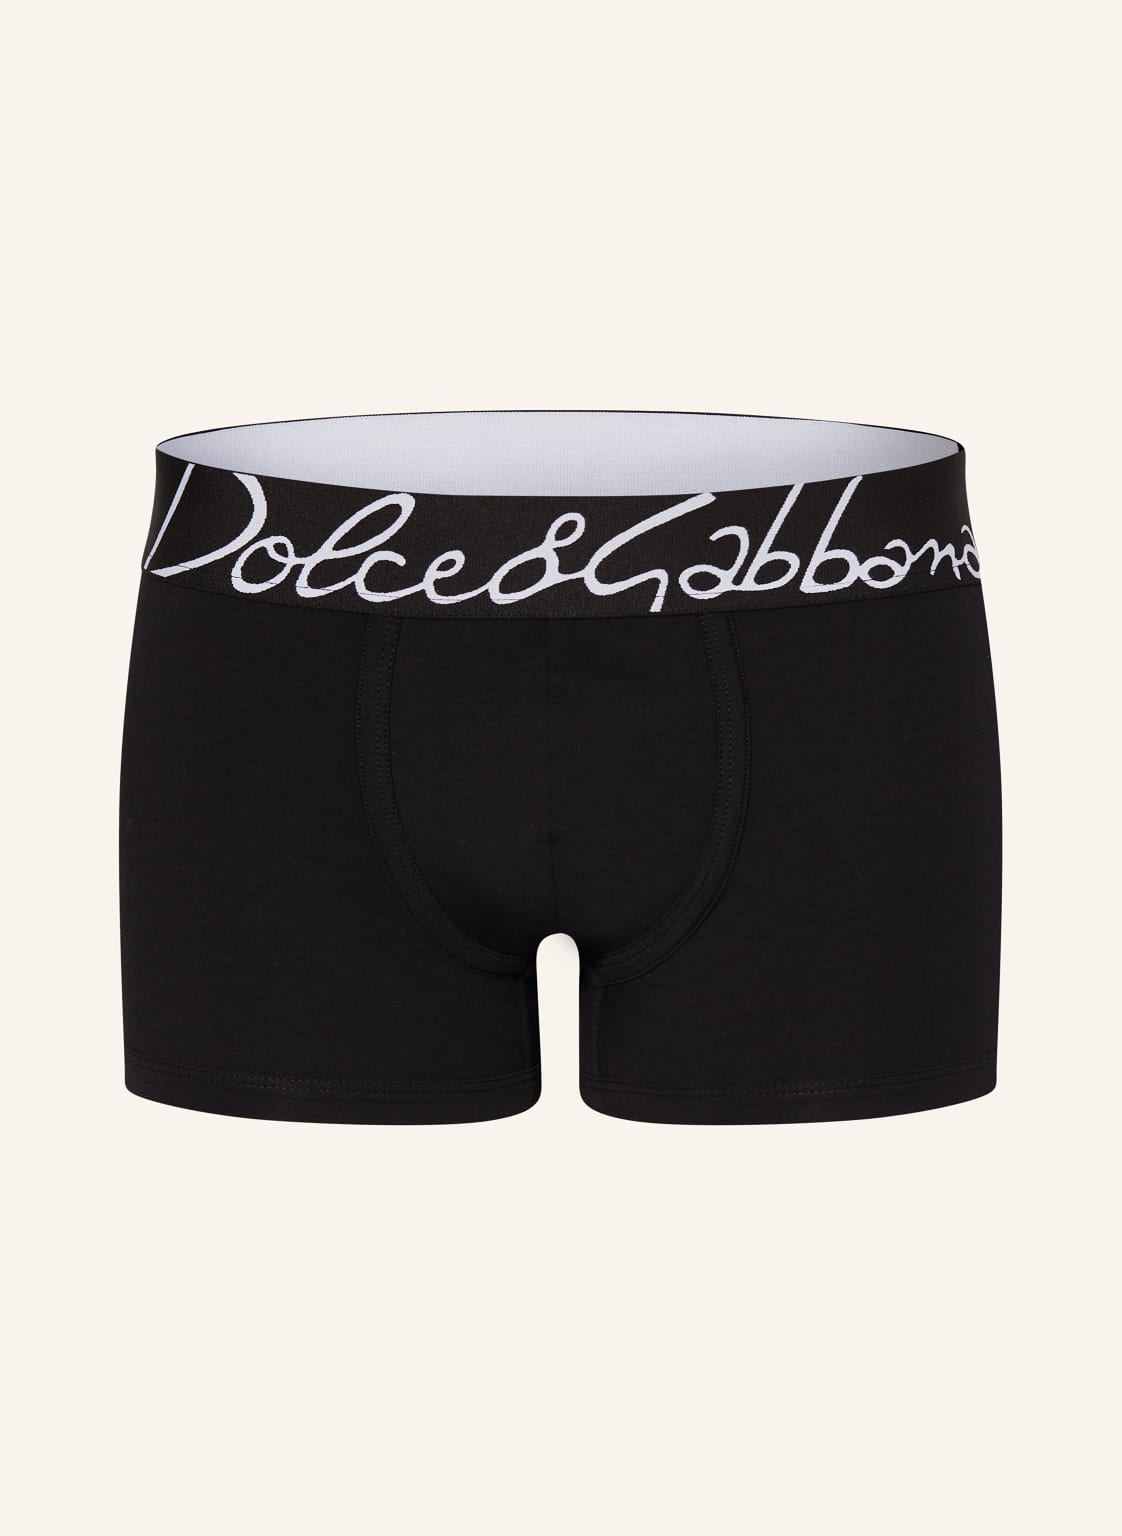 Dolce & Gabbana Boxershorts schwarz von Dolce & Gabbana